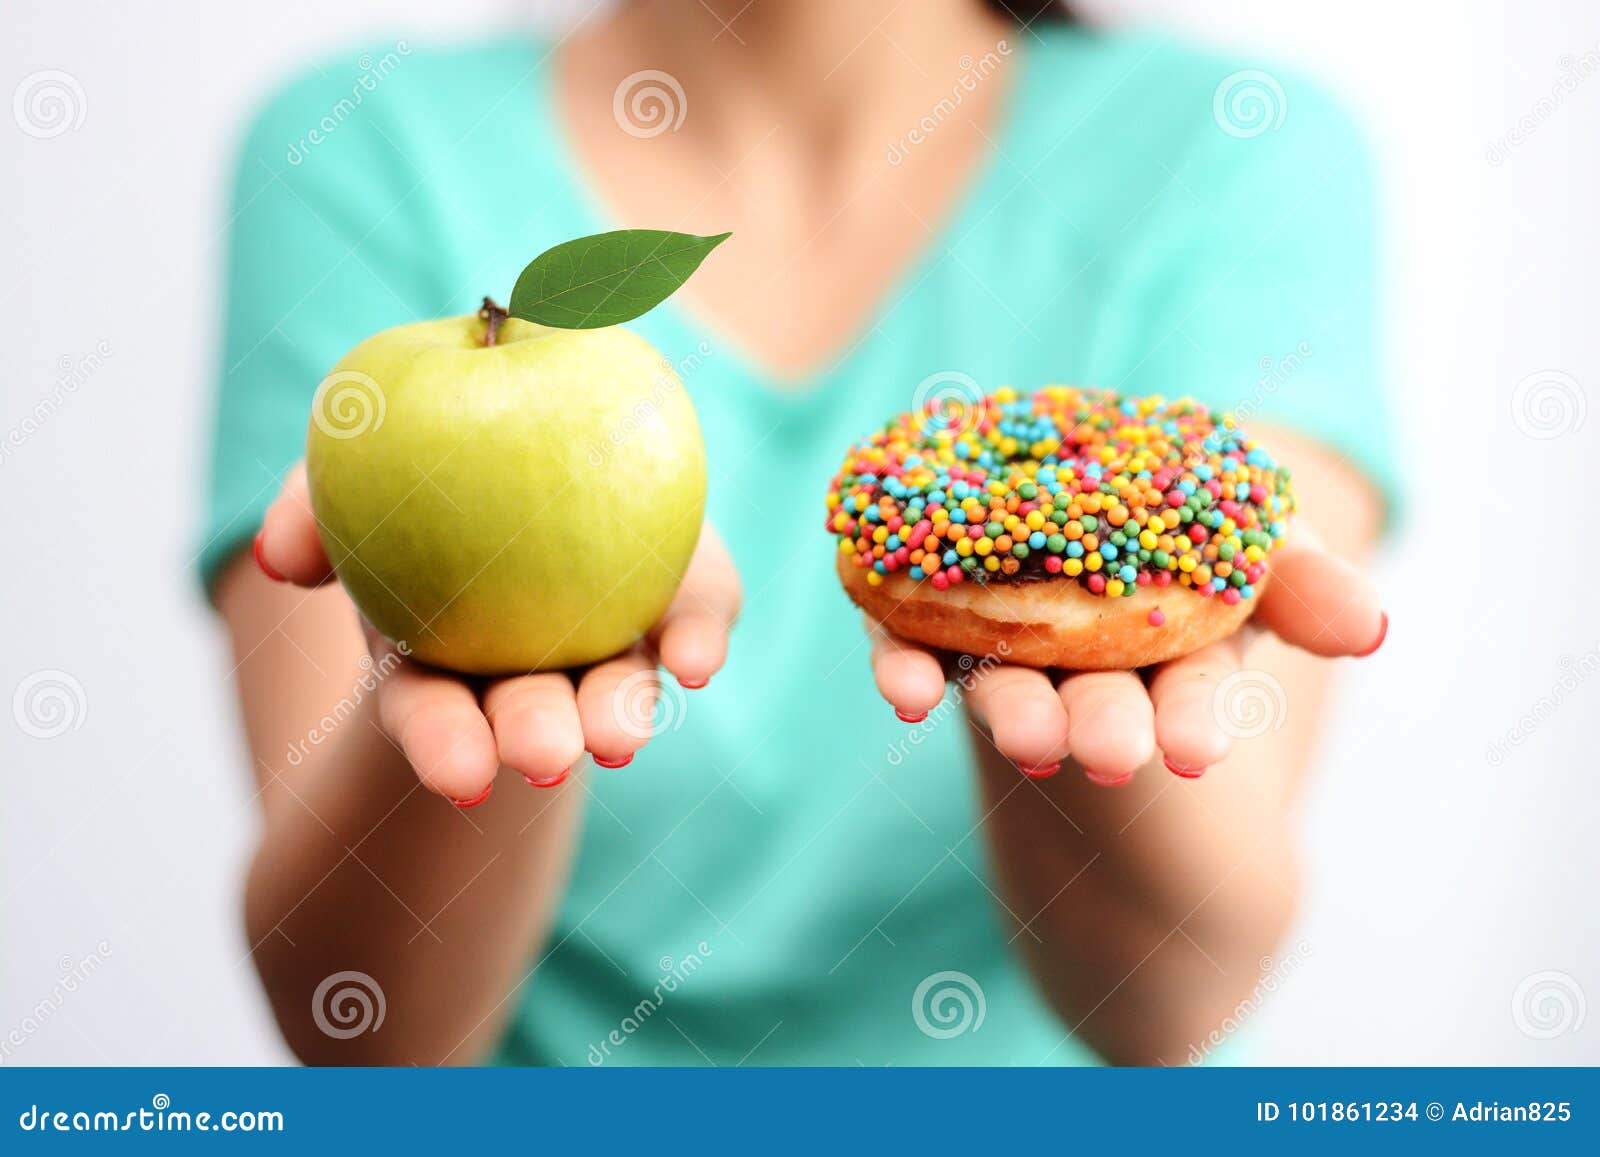 itÃ¢â¬â¢s hard to choose healthy food concept, with woman hand holding an green apple and a calorie bomb donut